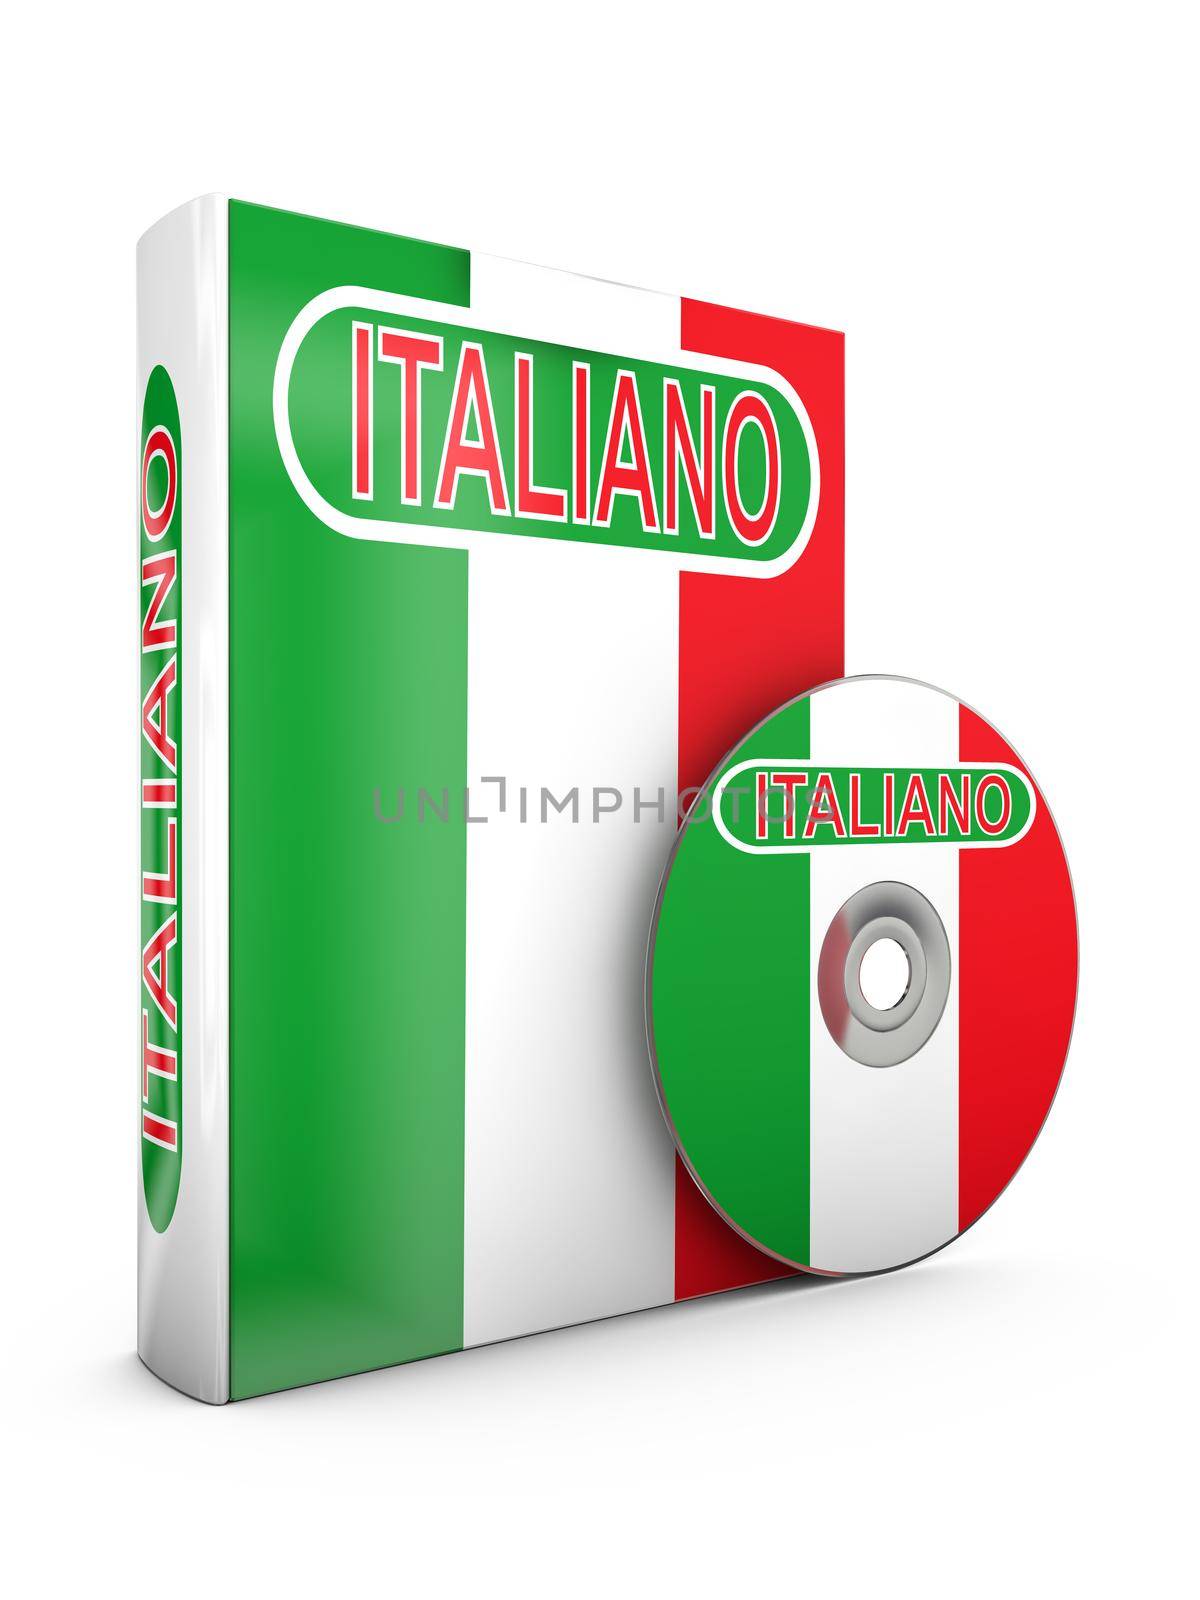 Italian by rommma